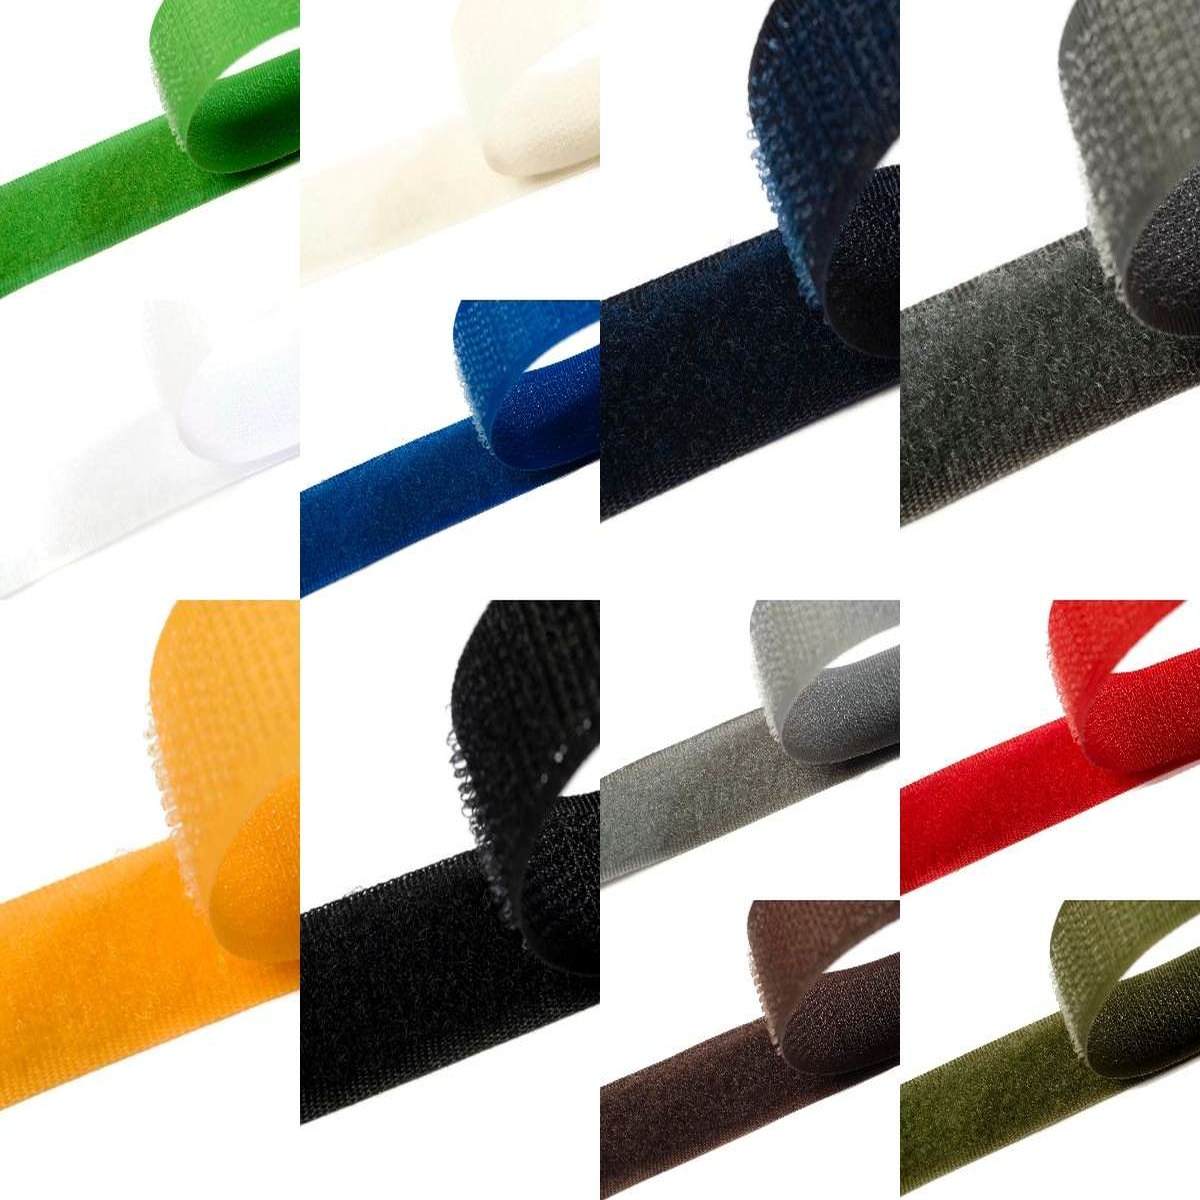 Klettband zum aufnähen 100mm breit in 12 Farben